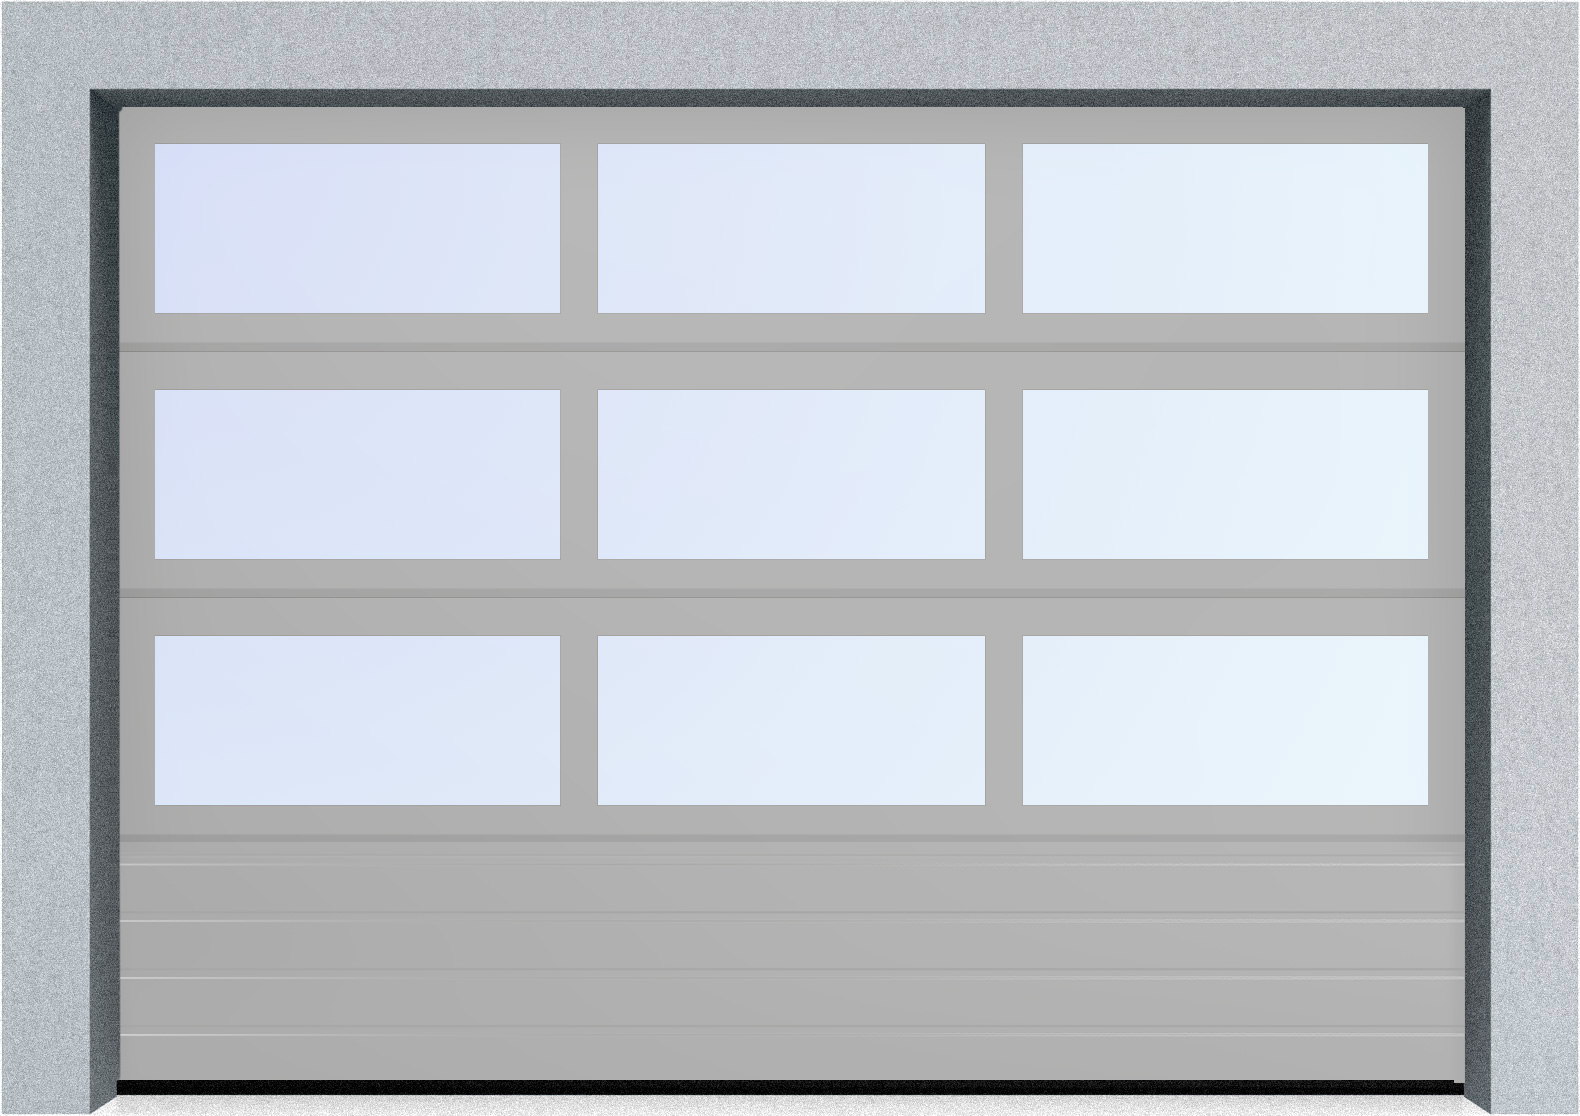  Секционные панорамные ворота серии AluTrend с комбинированным типом полотна (АЛПС) 2500х2625 нижняя панель S-гофр, Микроволна стандартные цвета, фото 18 